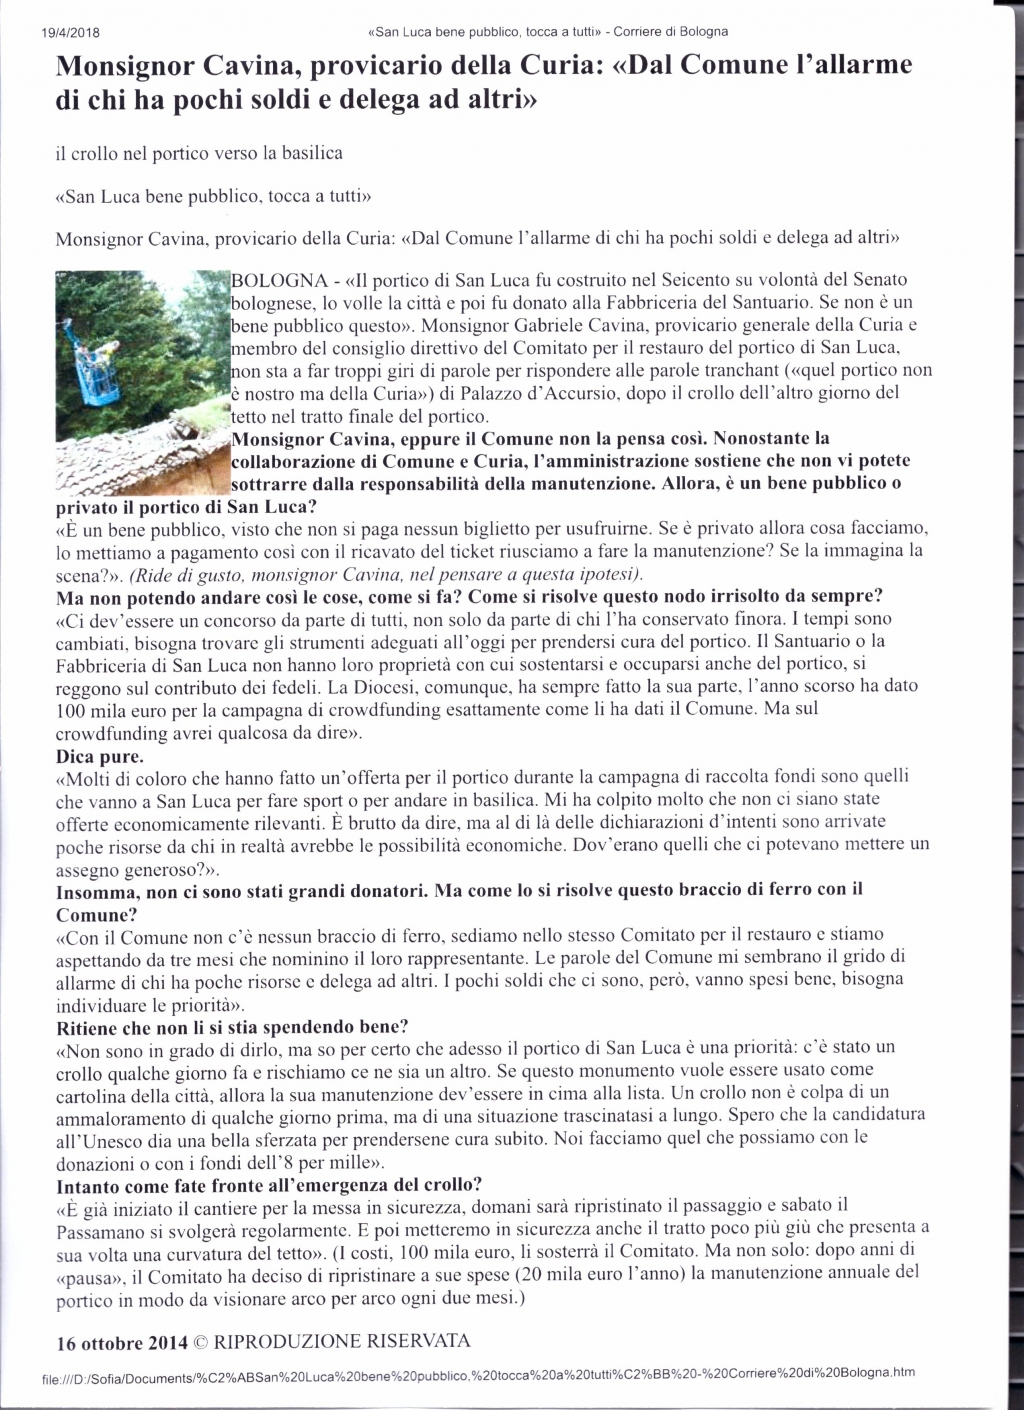 Monsignor Cavina - Corriere di Bologna 16-10-2014